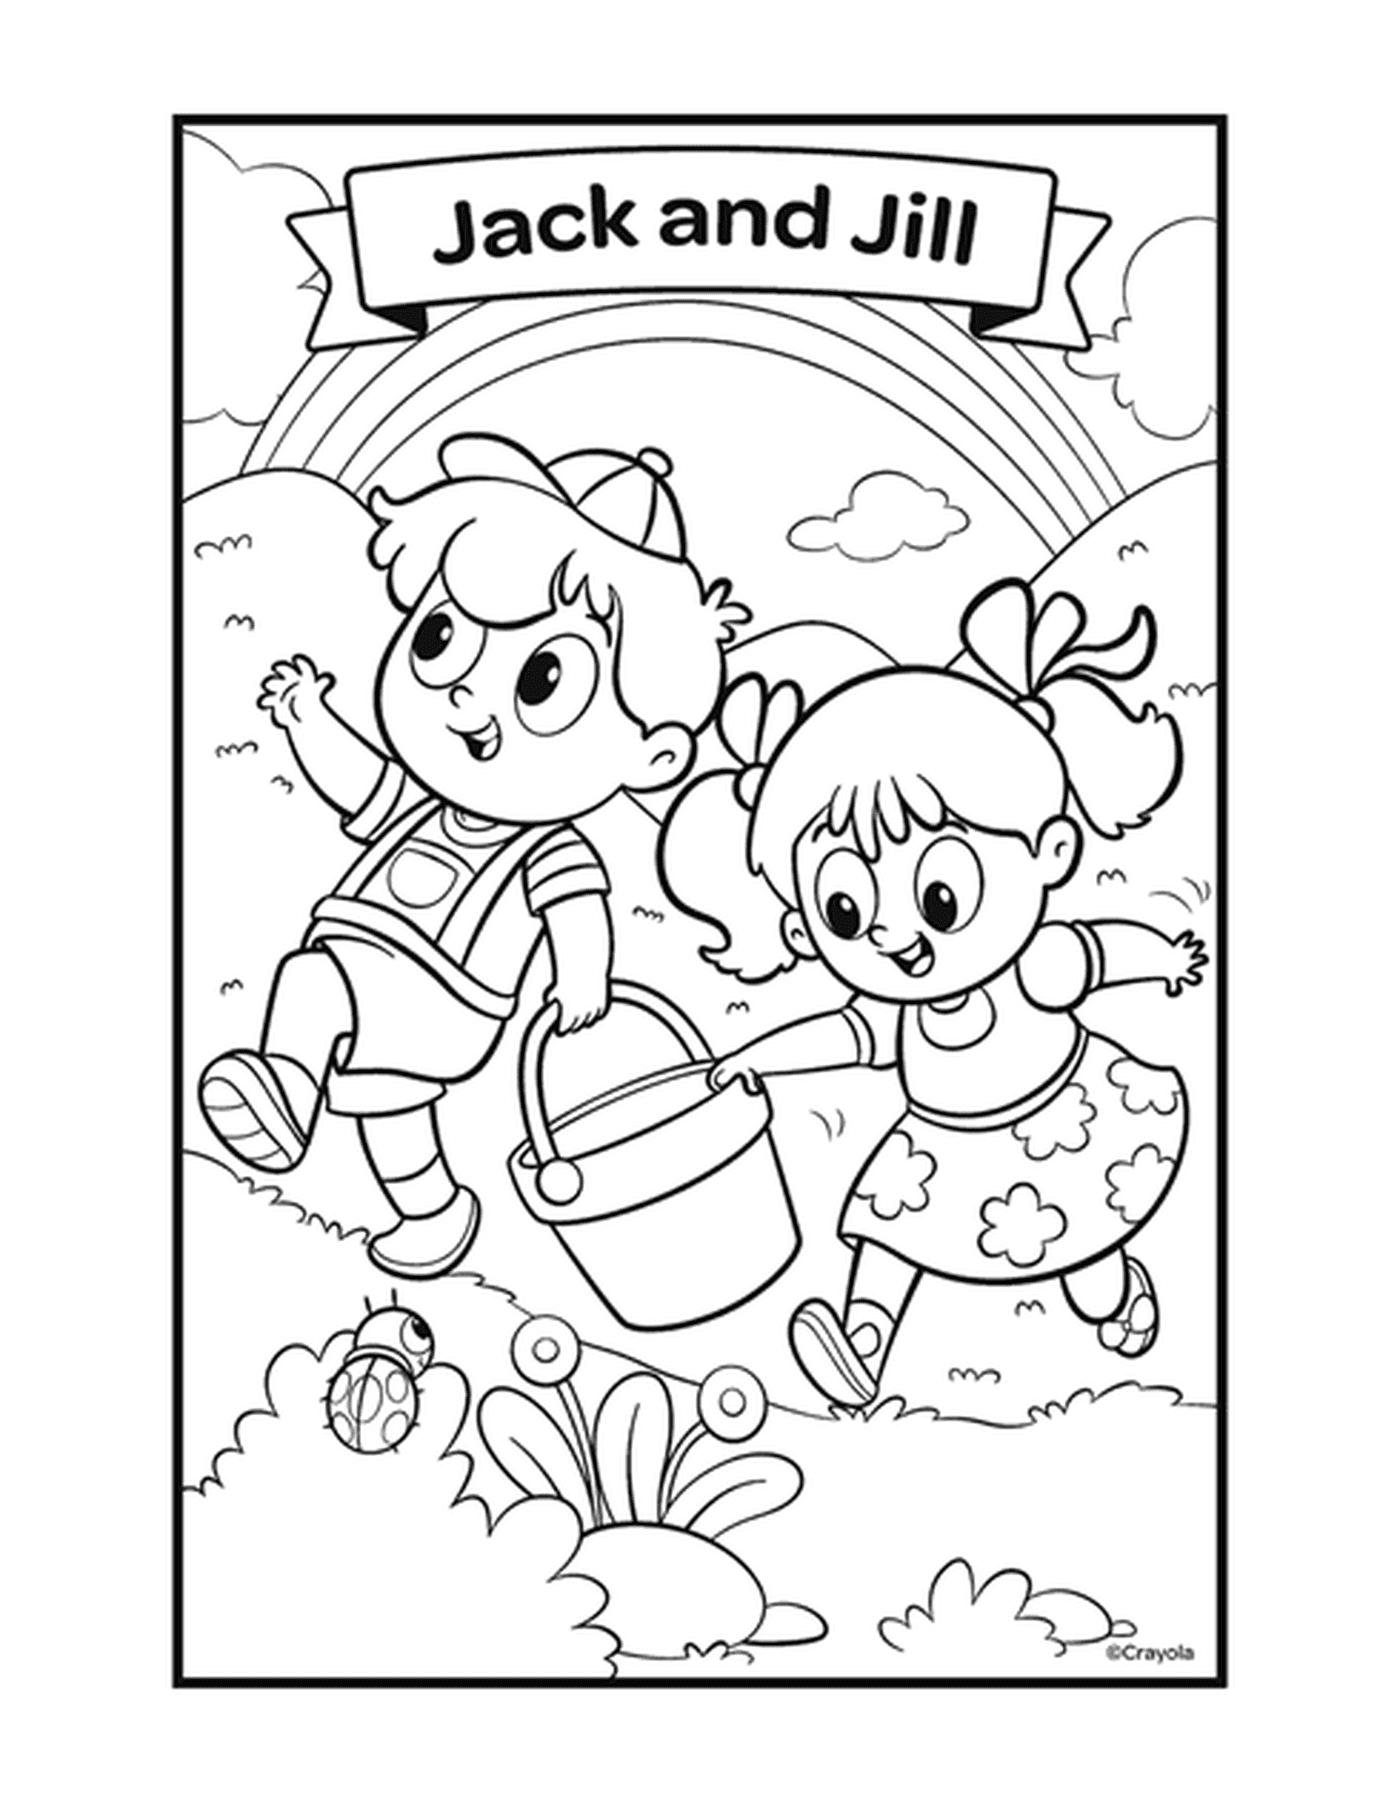  Jack und Jill mit zwei Kindern spielen mit einem Eimer 